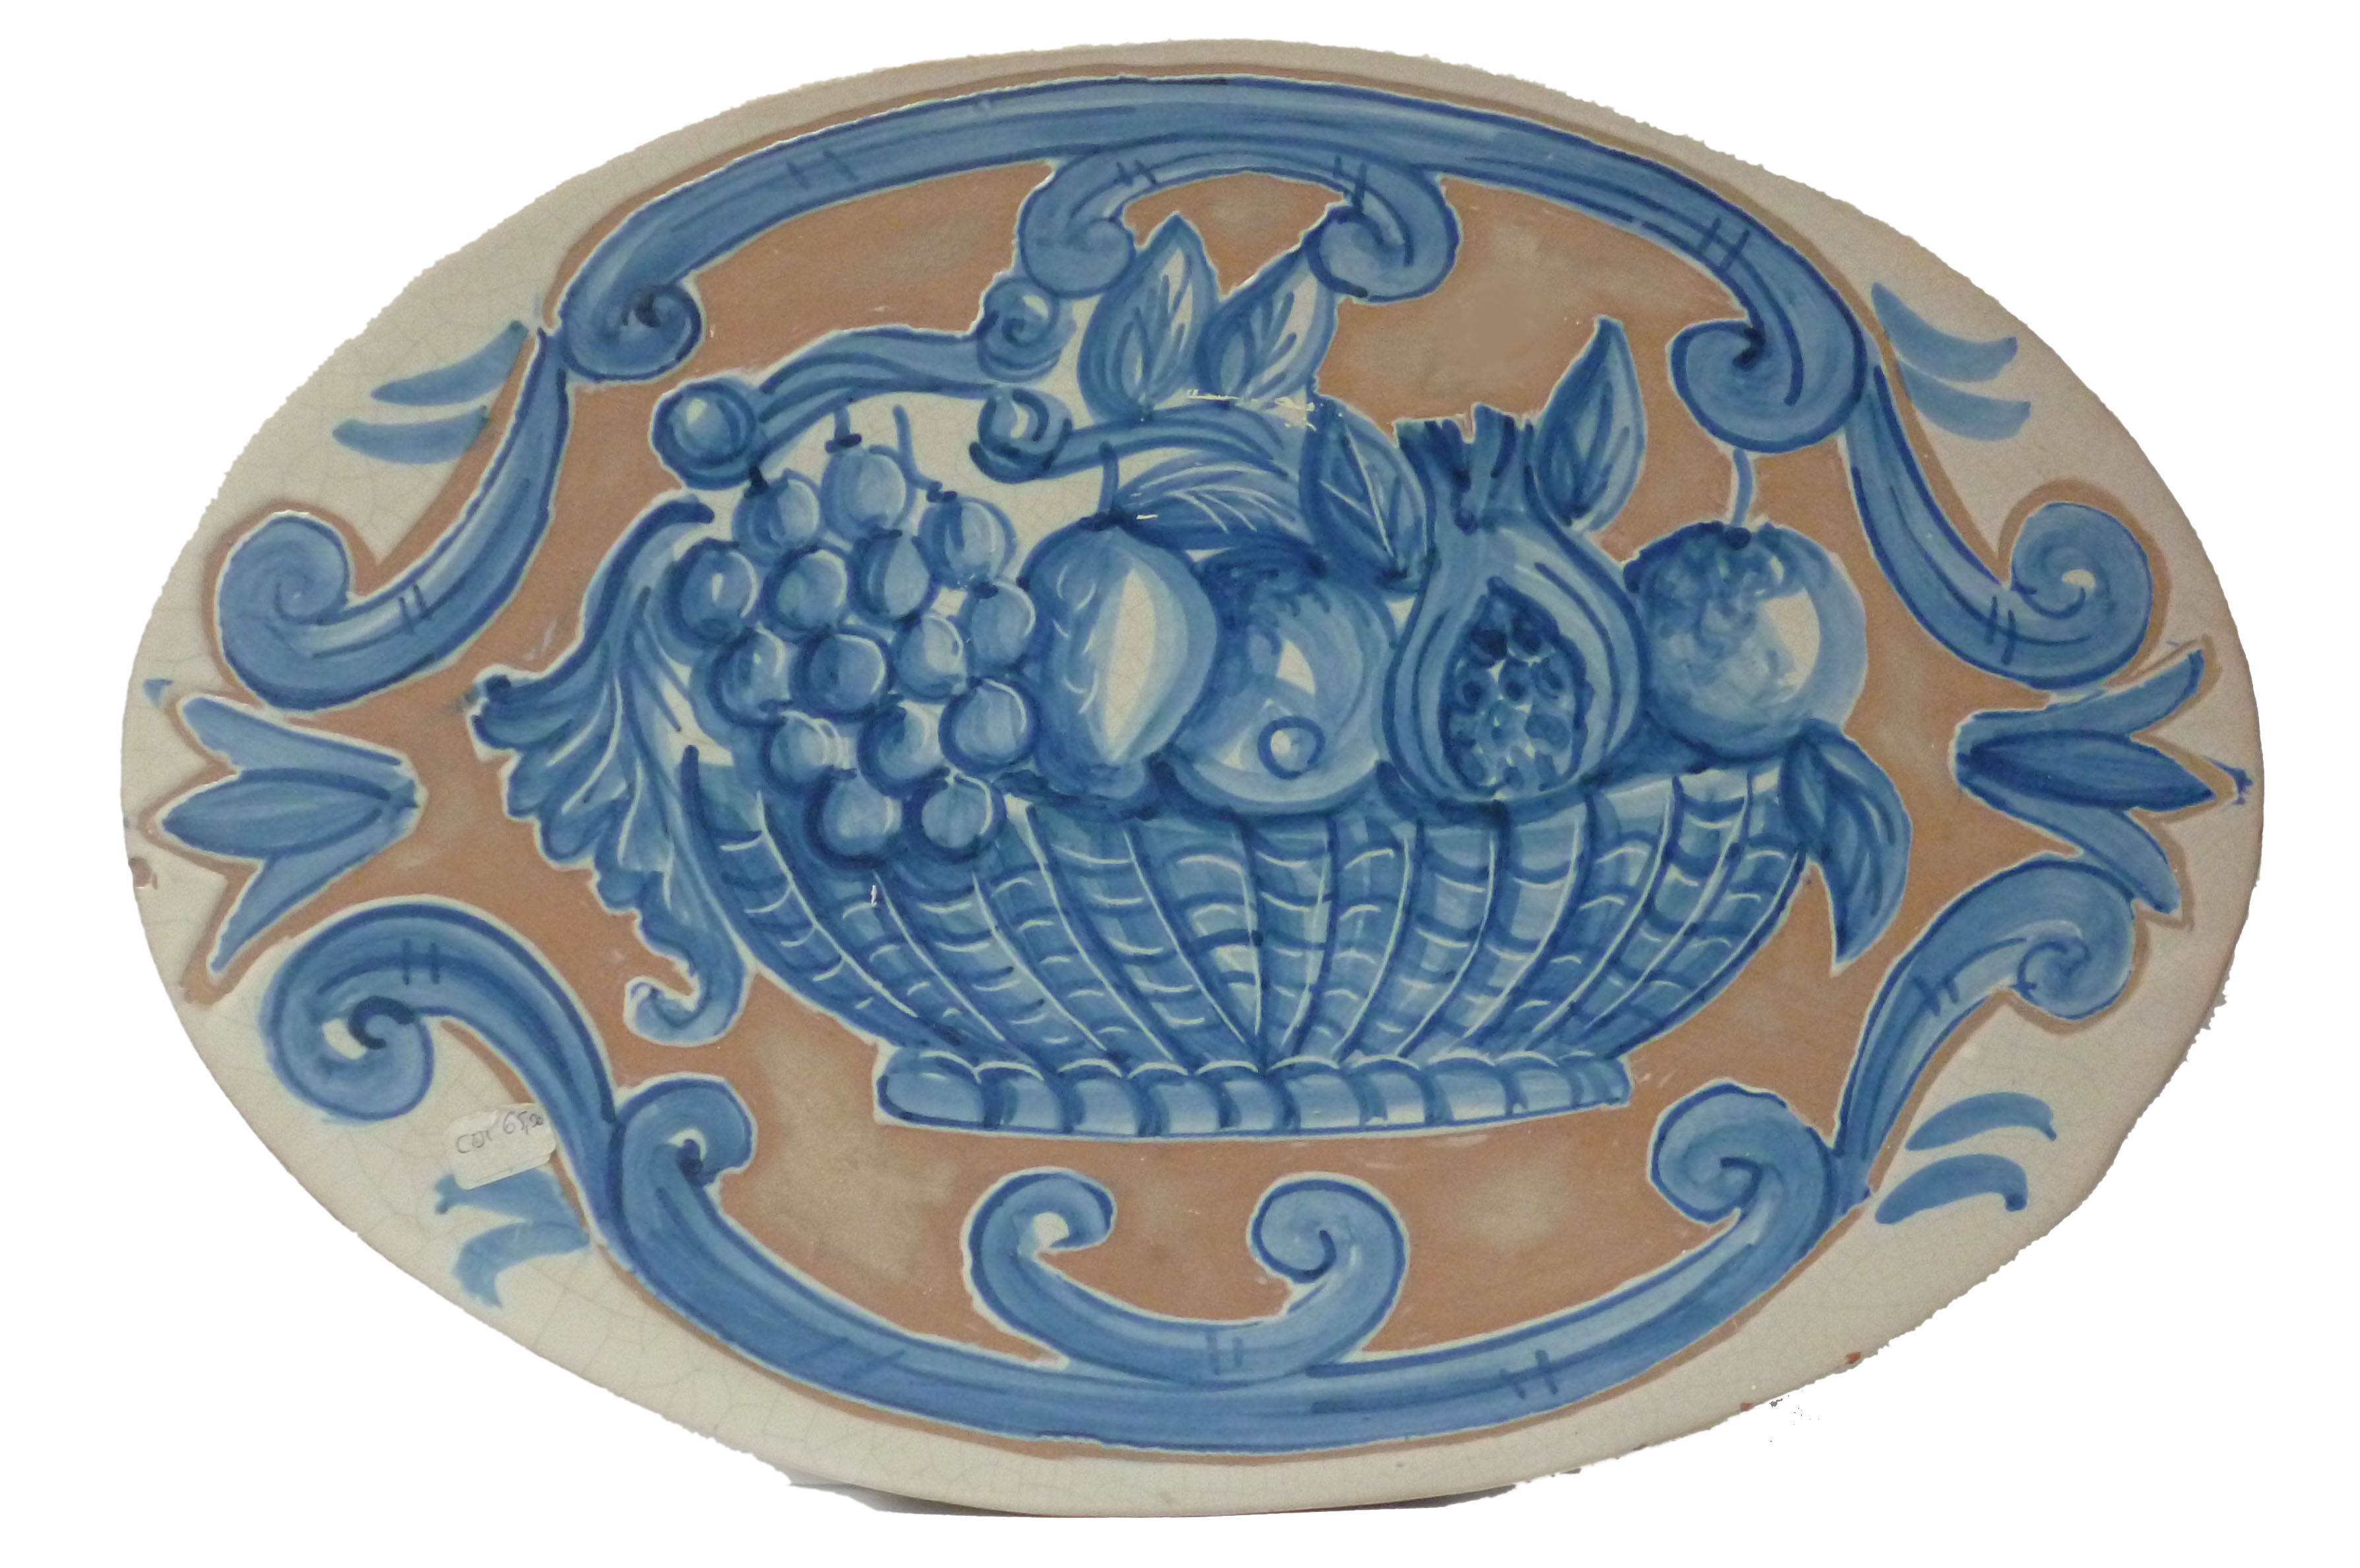 Ovale con cesto di frutta, colore azzurro. Dimensioni 30x40